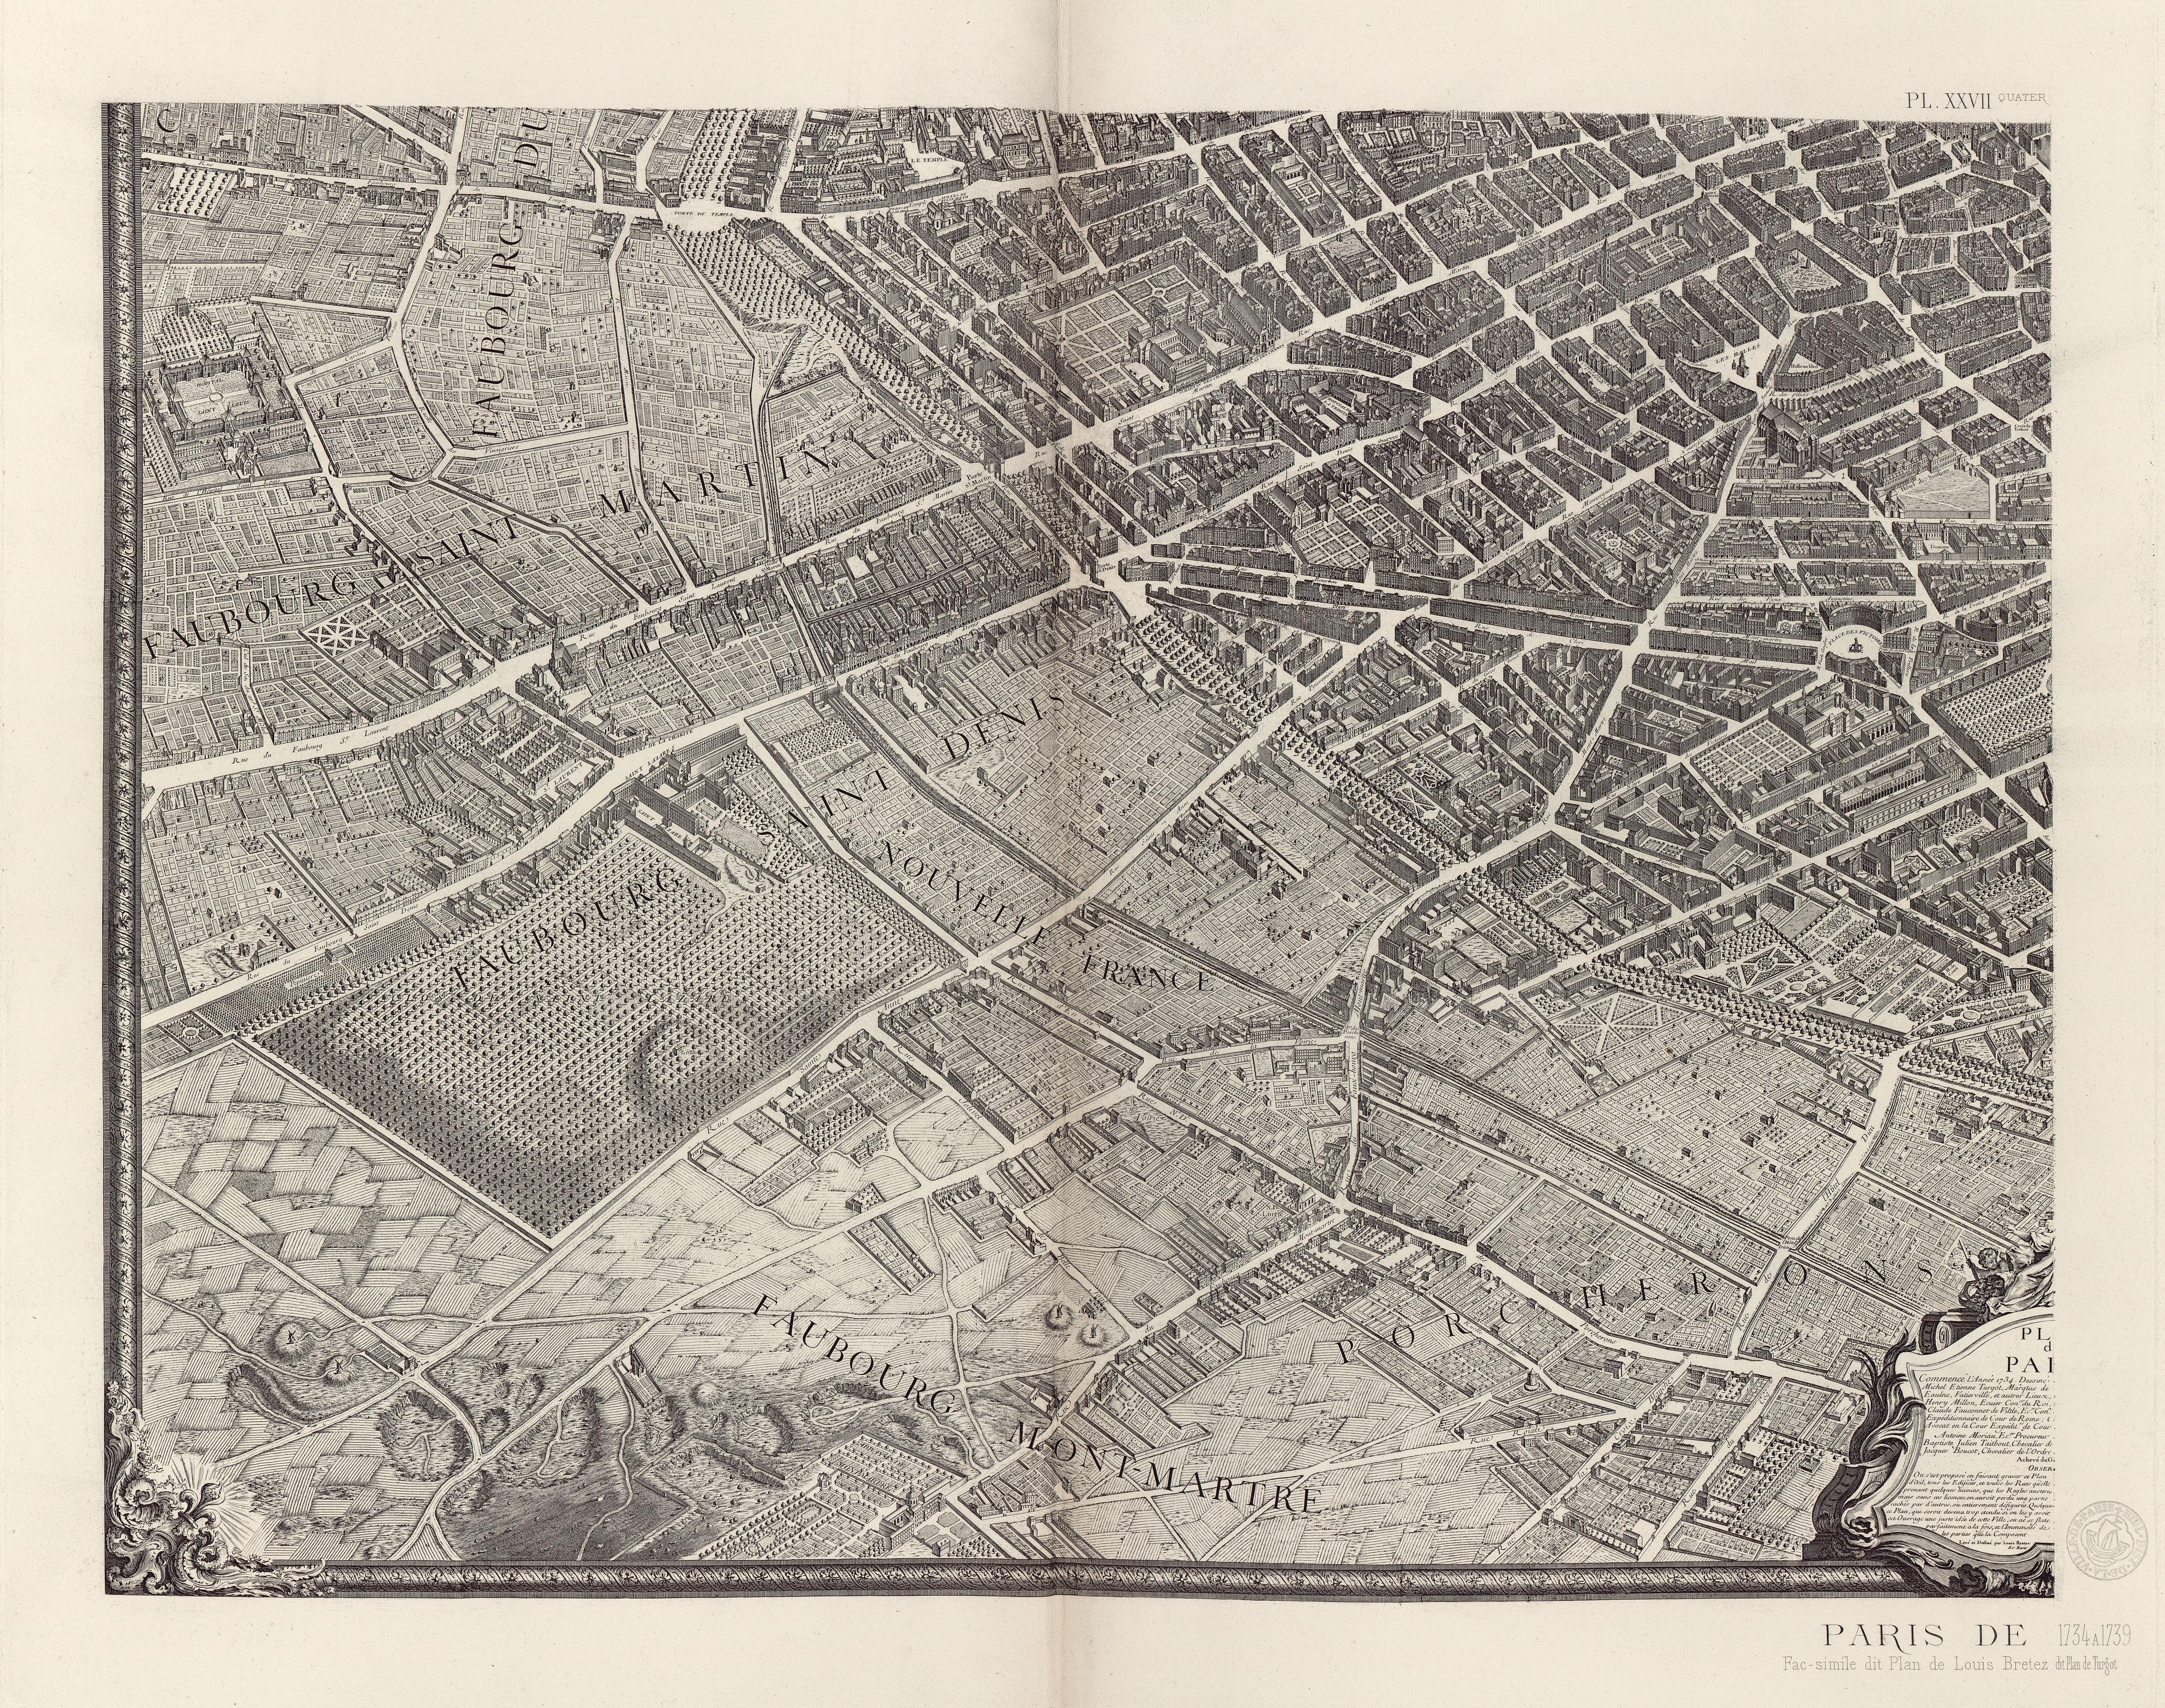 Париж в 1739 г. План, составленный Луи-Брете (Louis Bretez), так называемый план Тюрго. Paris eu 1739 (plan Turgot)